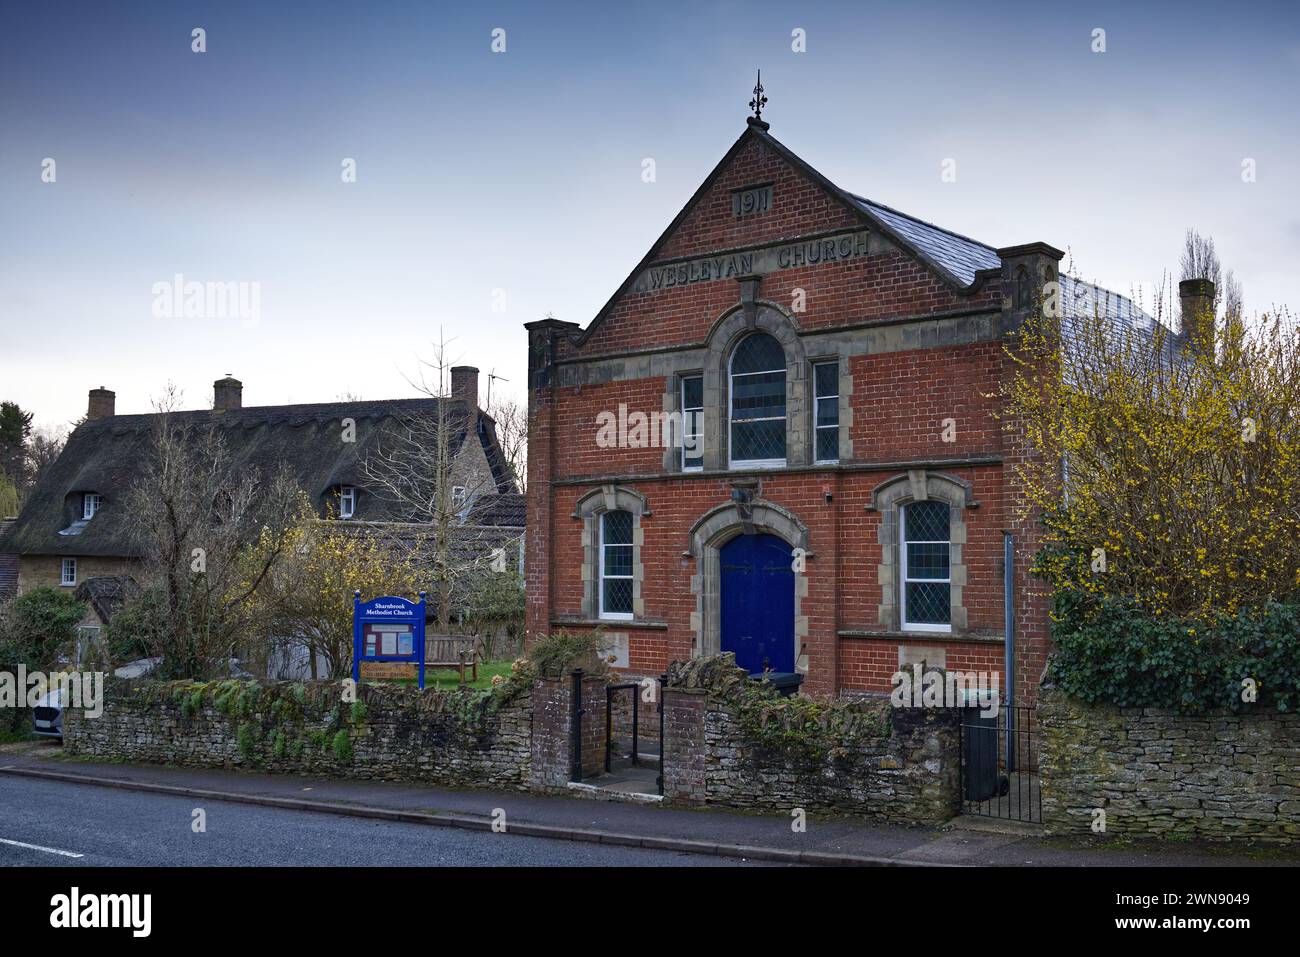 Methodist Church, anciennement Wesleyan Church, à Park Lane, Sharnbrook, Bedfordshire, Angleterre, ROYAUME-UNI. Le bâtiment est juste à côté d'un chalet en chaume Banque D'Images